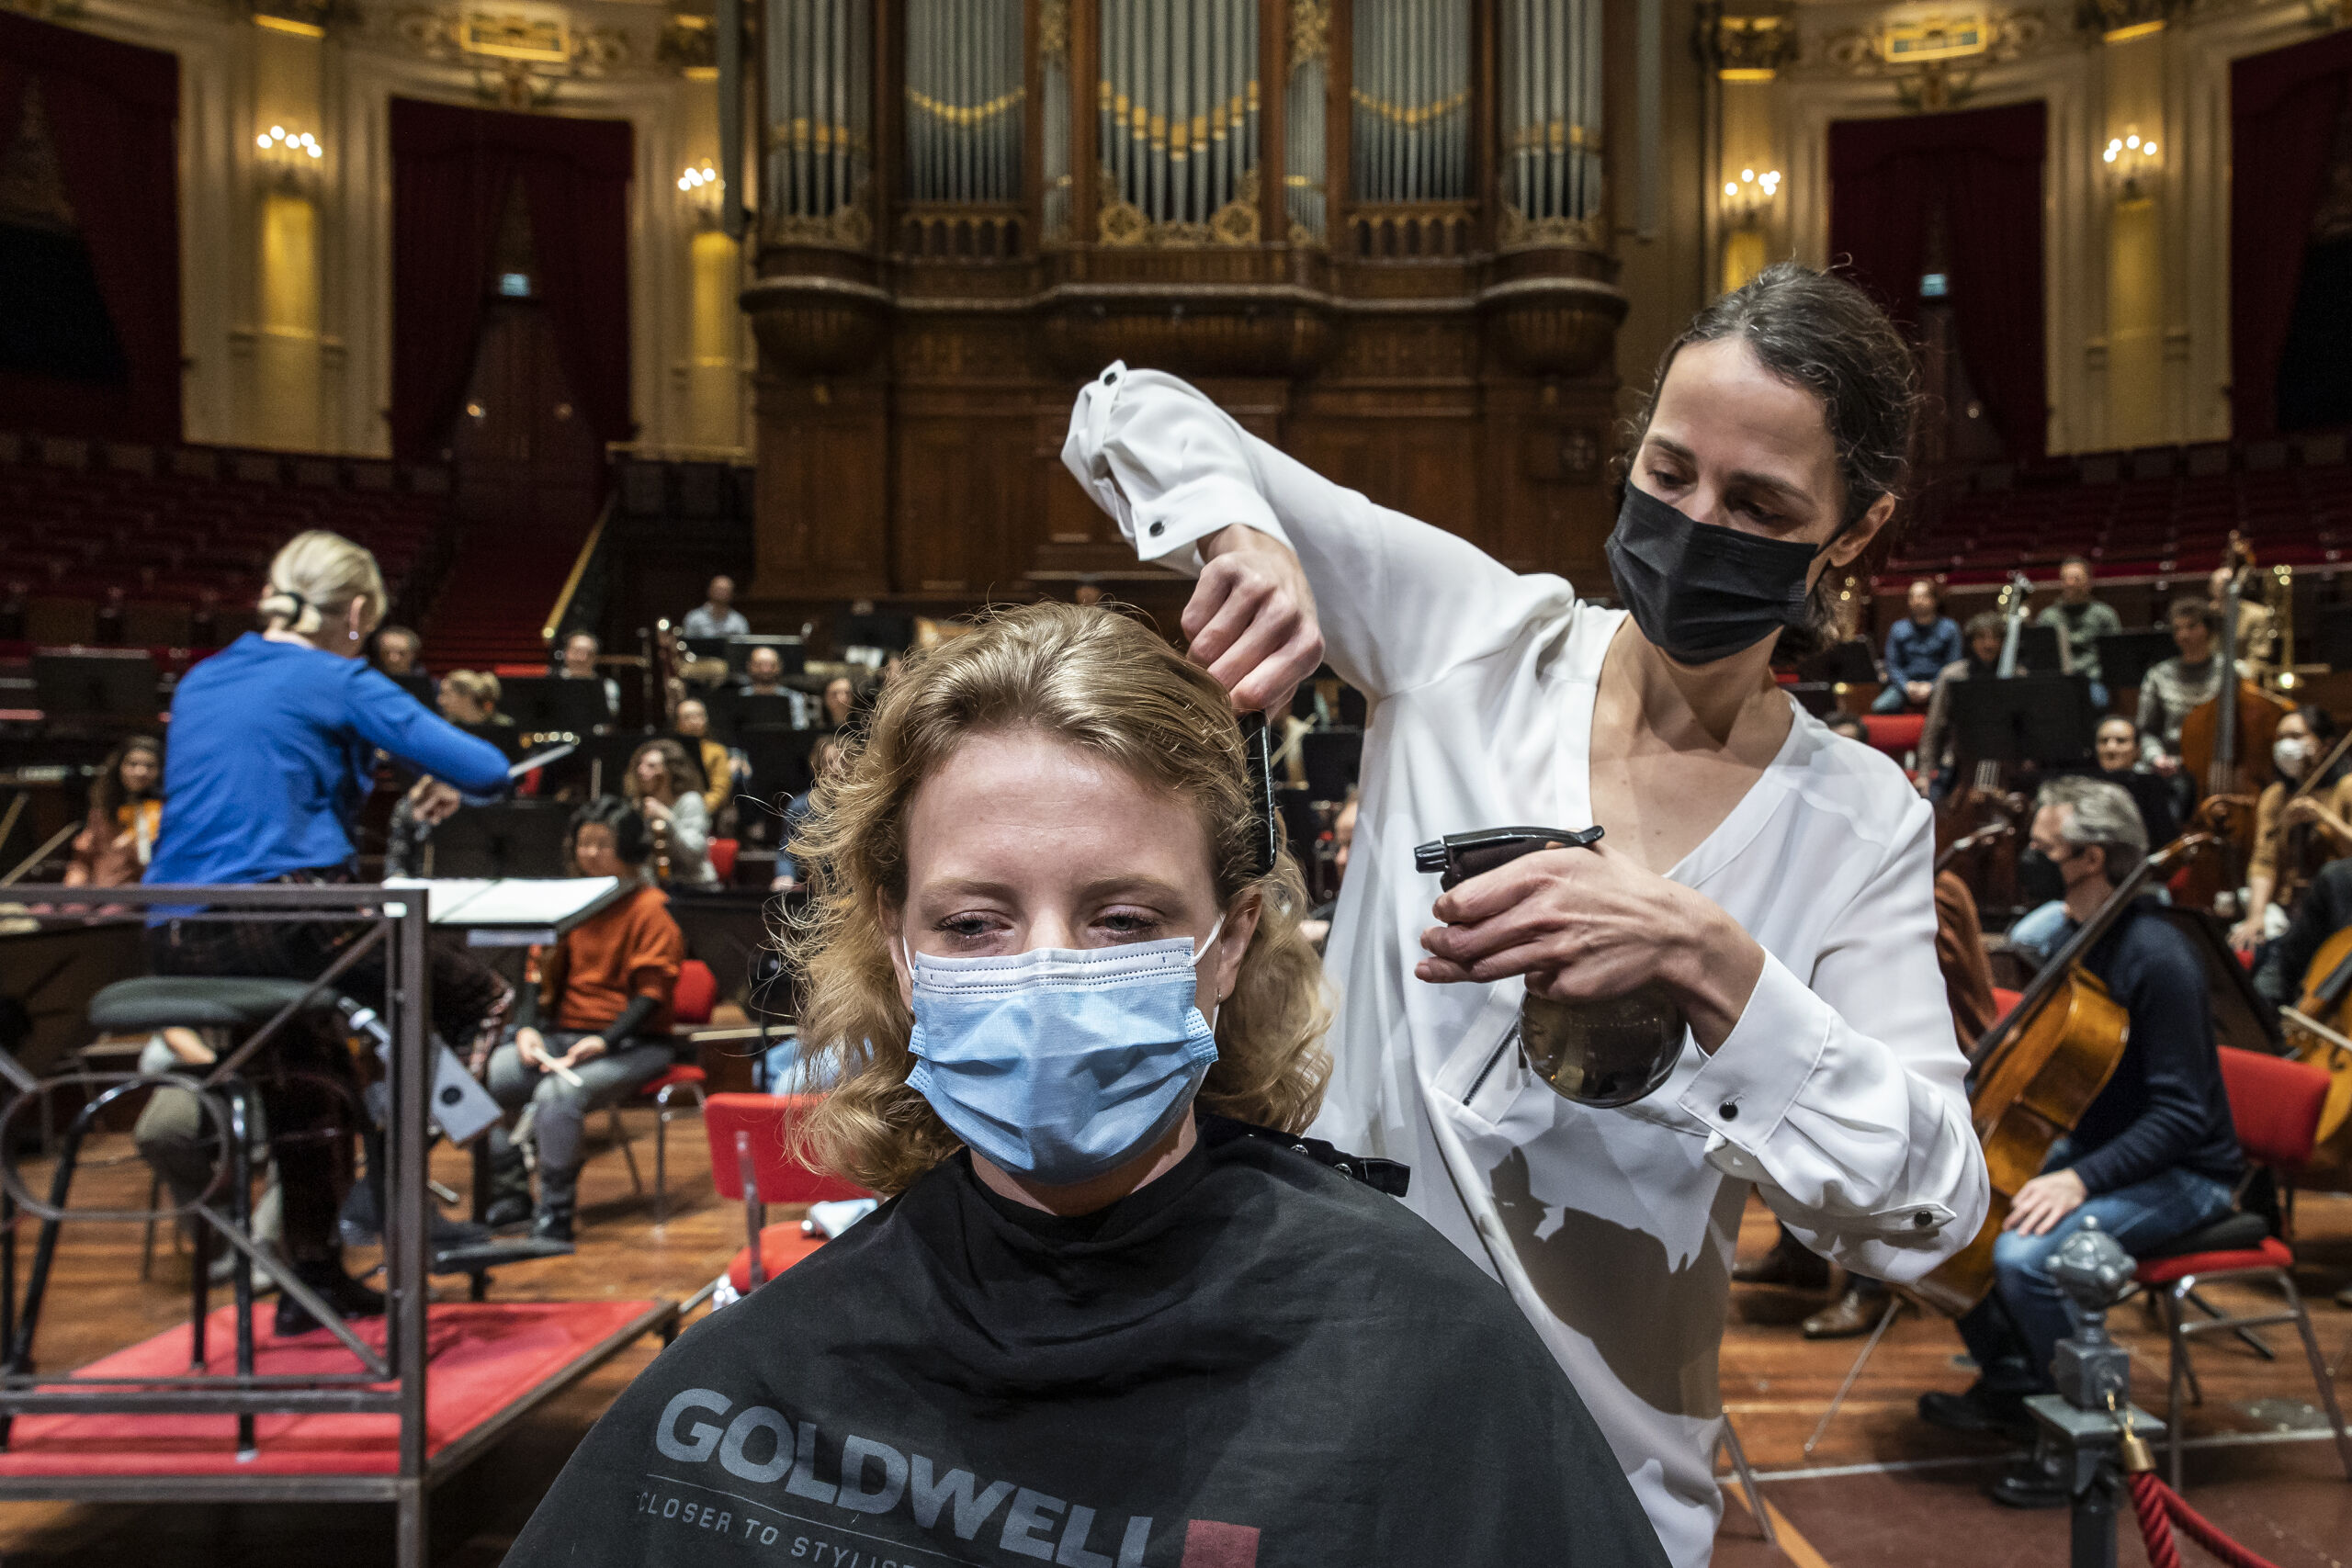 In het Concertgebouw in Amsterdam knippen kappers klanten op het podium terwijl het Concertgebouworkest repeteert, Het is een actie tegen het coronabeleid van de overheid. 